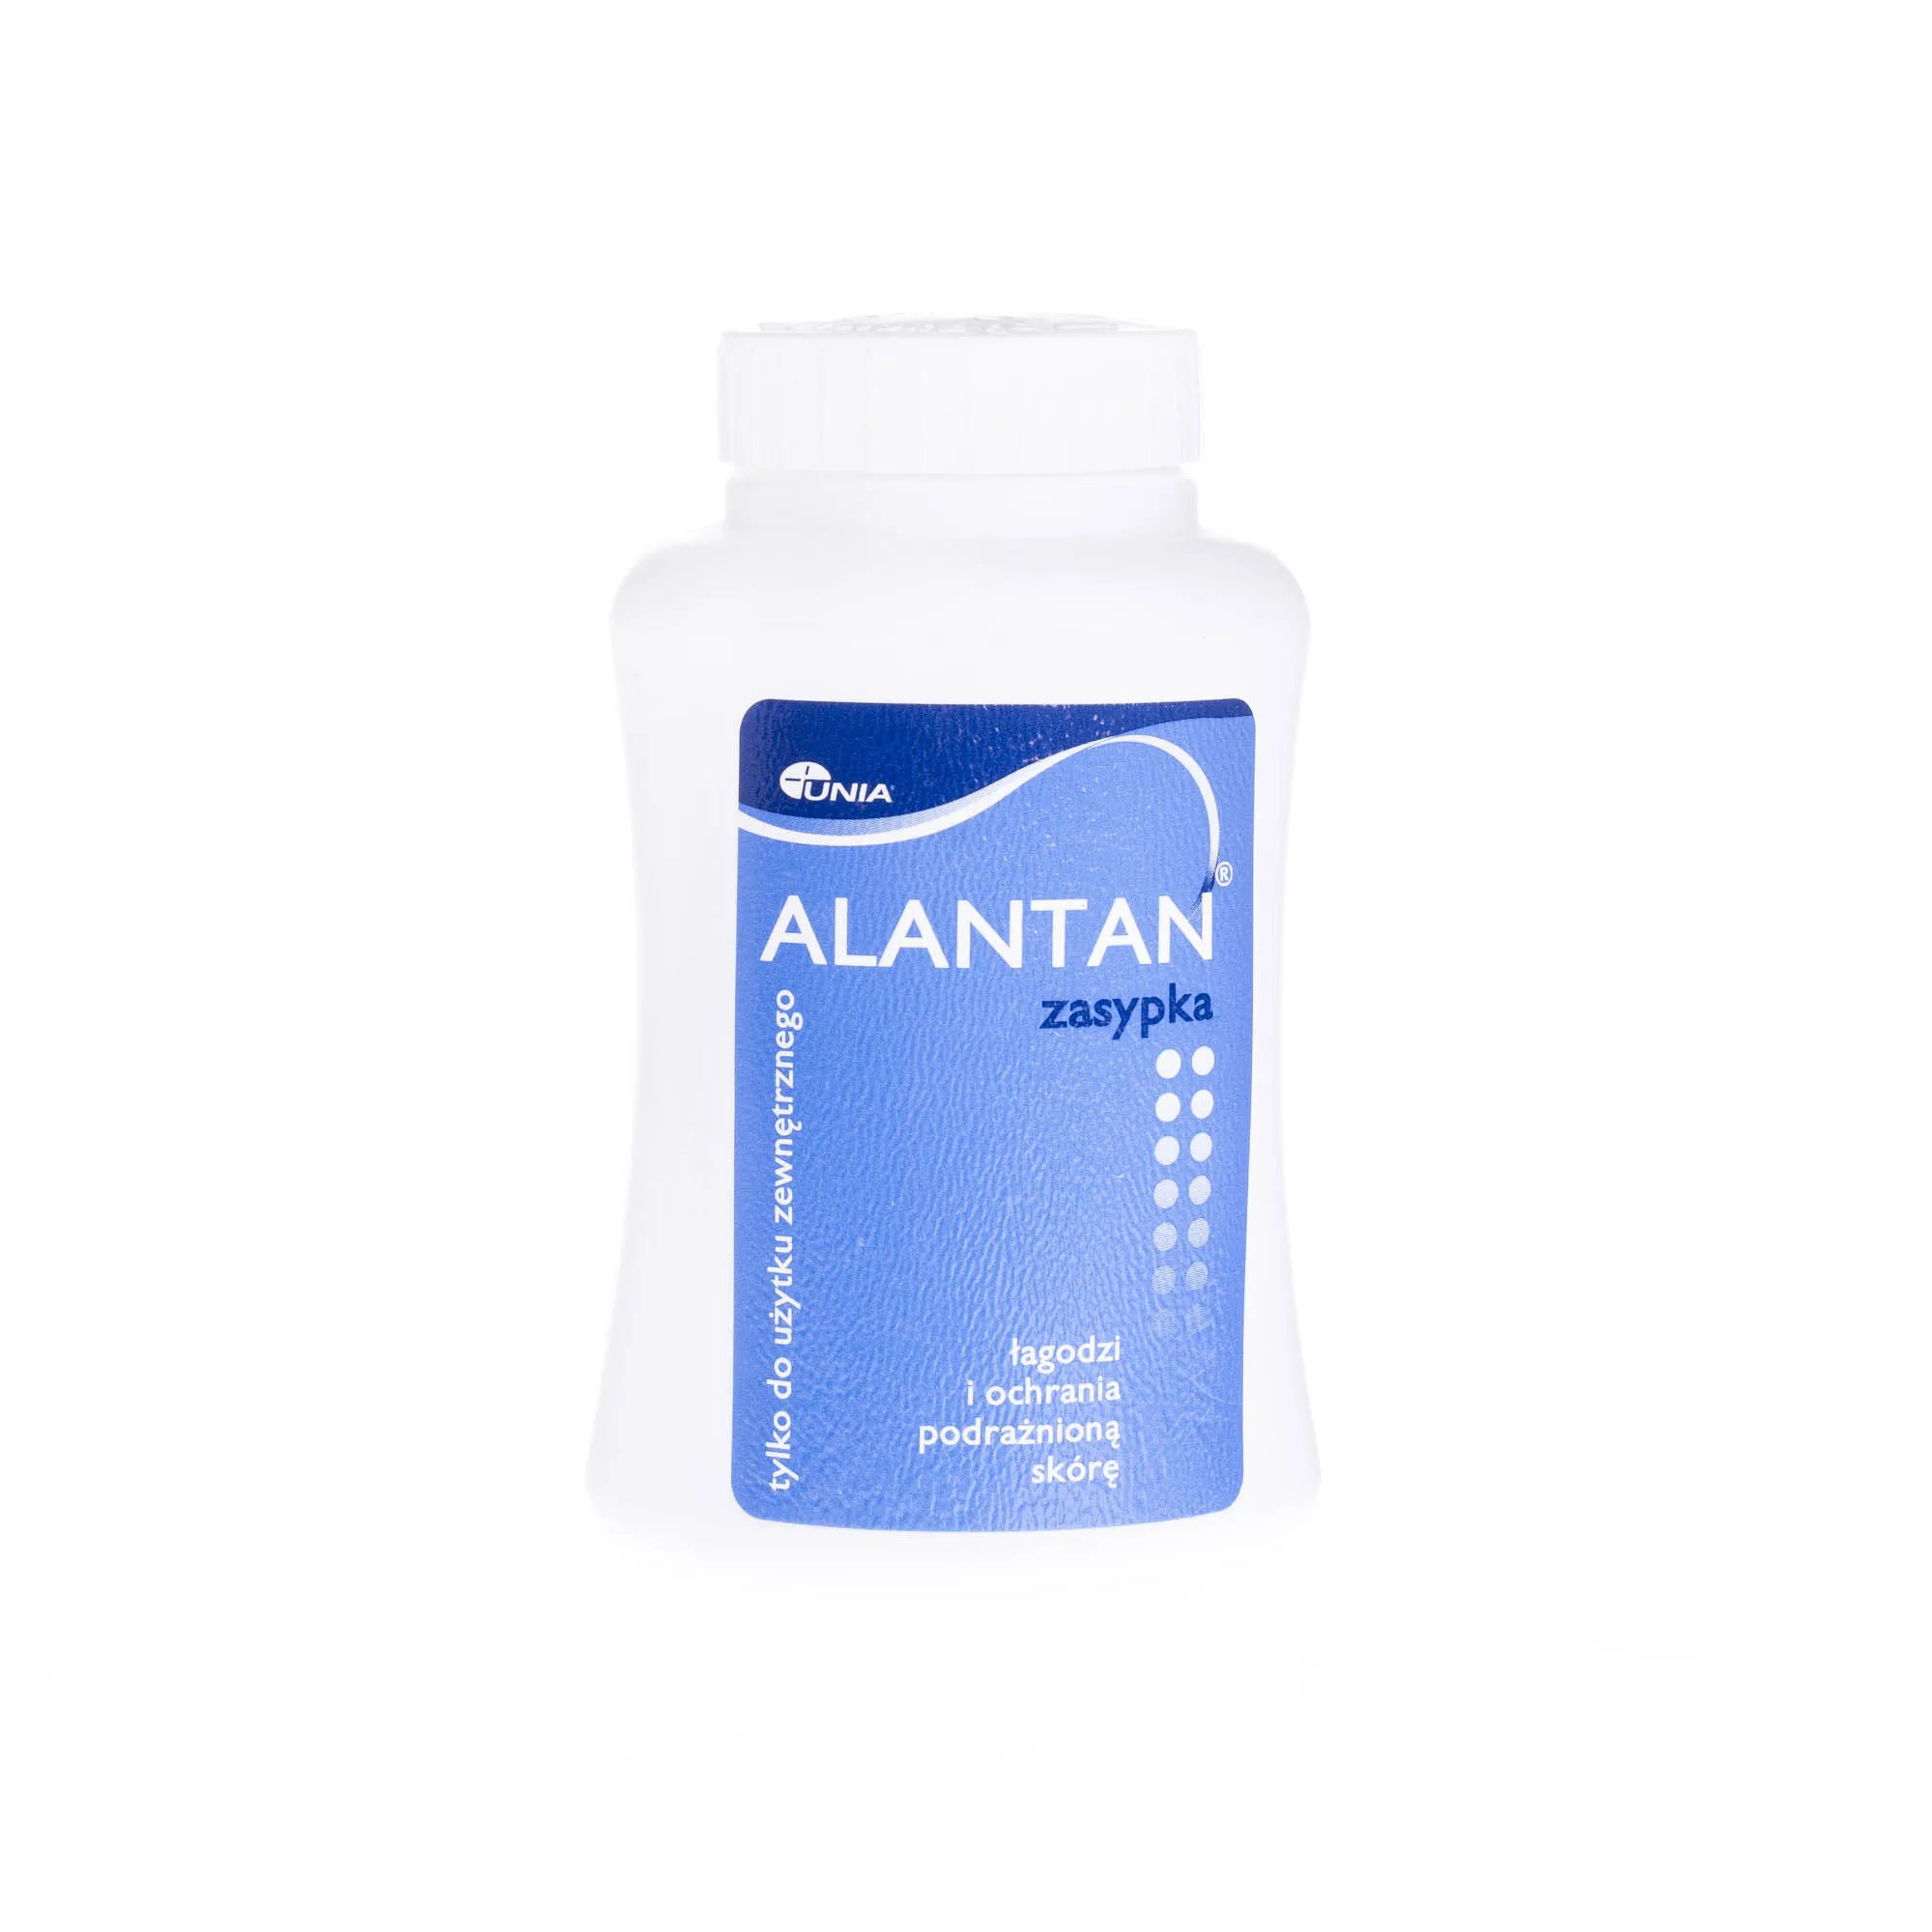 Alantan, zasypka łagodząca i chroniąca podrażnioną skórę, 50 g